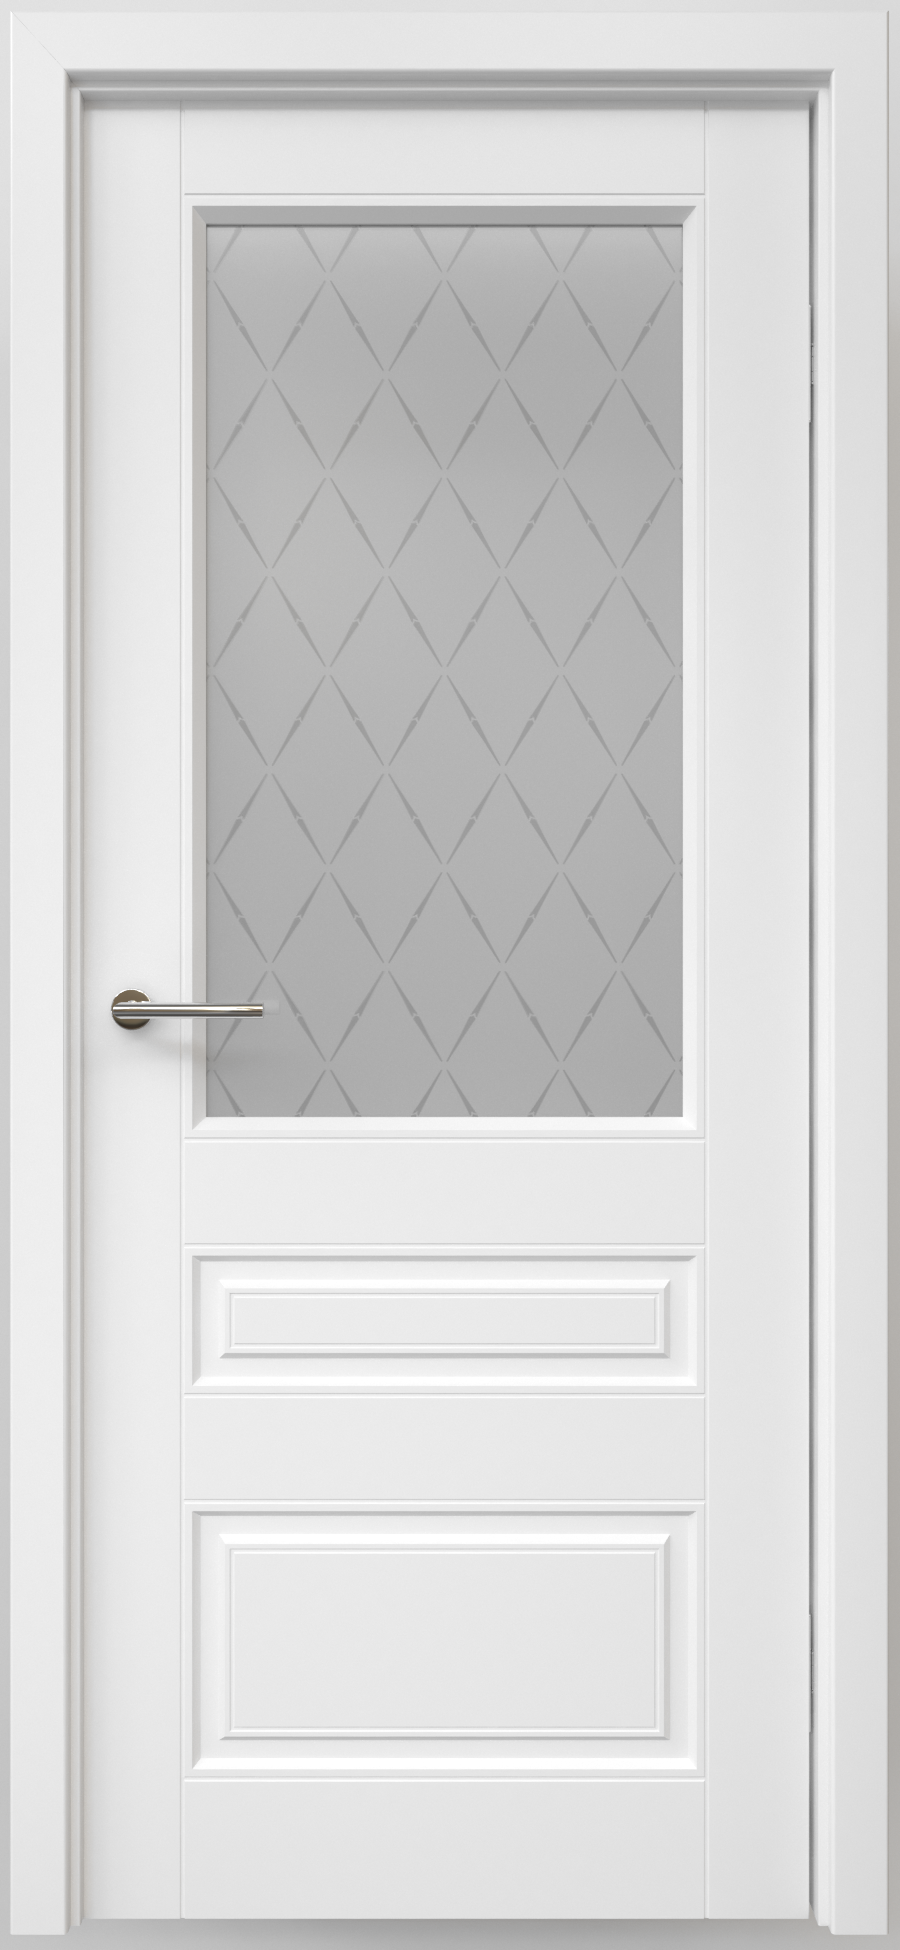 Полотно дверное остекленное Эмаль Классика-3 ЛЕВОЕ 600 белый ст. мателюкс "Лорд мат" (защелка маг)